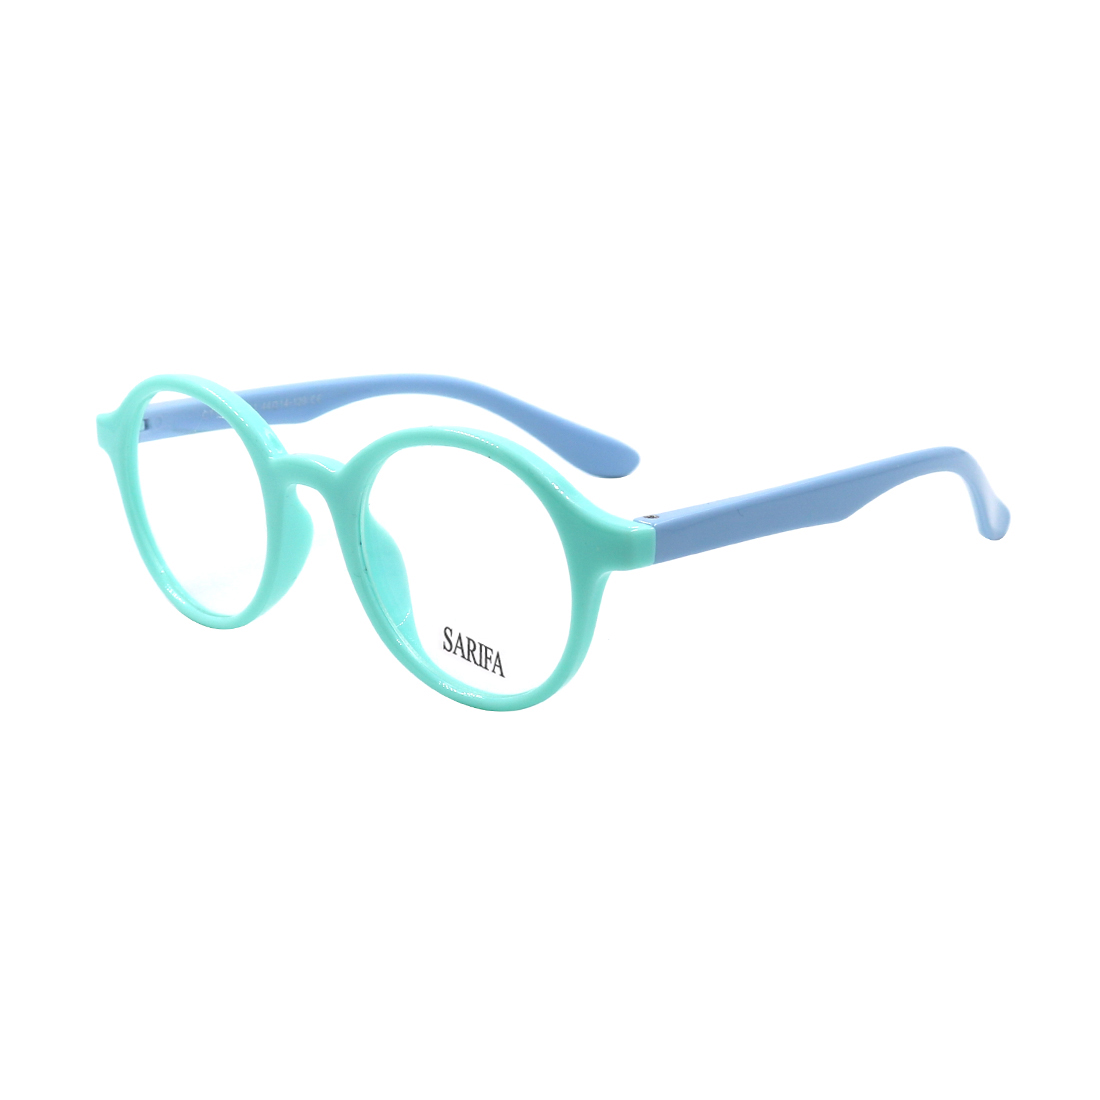 Gọng kính, mắt kính trẻ em SARIFA CT11015 (44-14-129), mắt kính thời trang